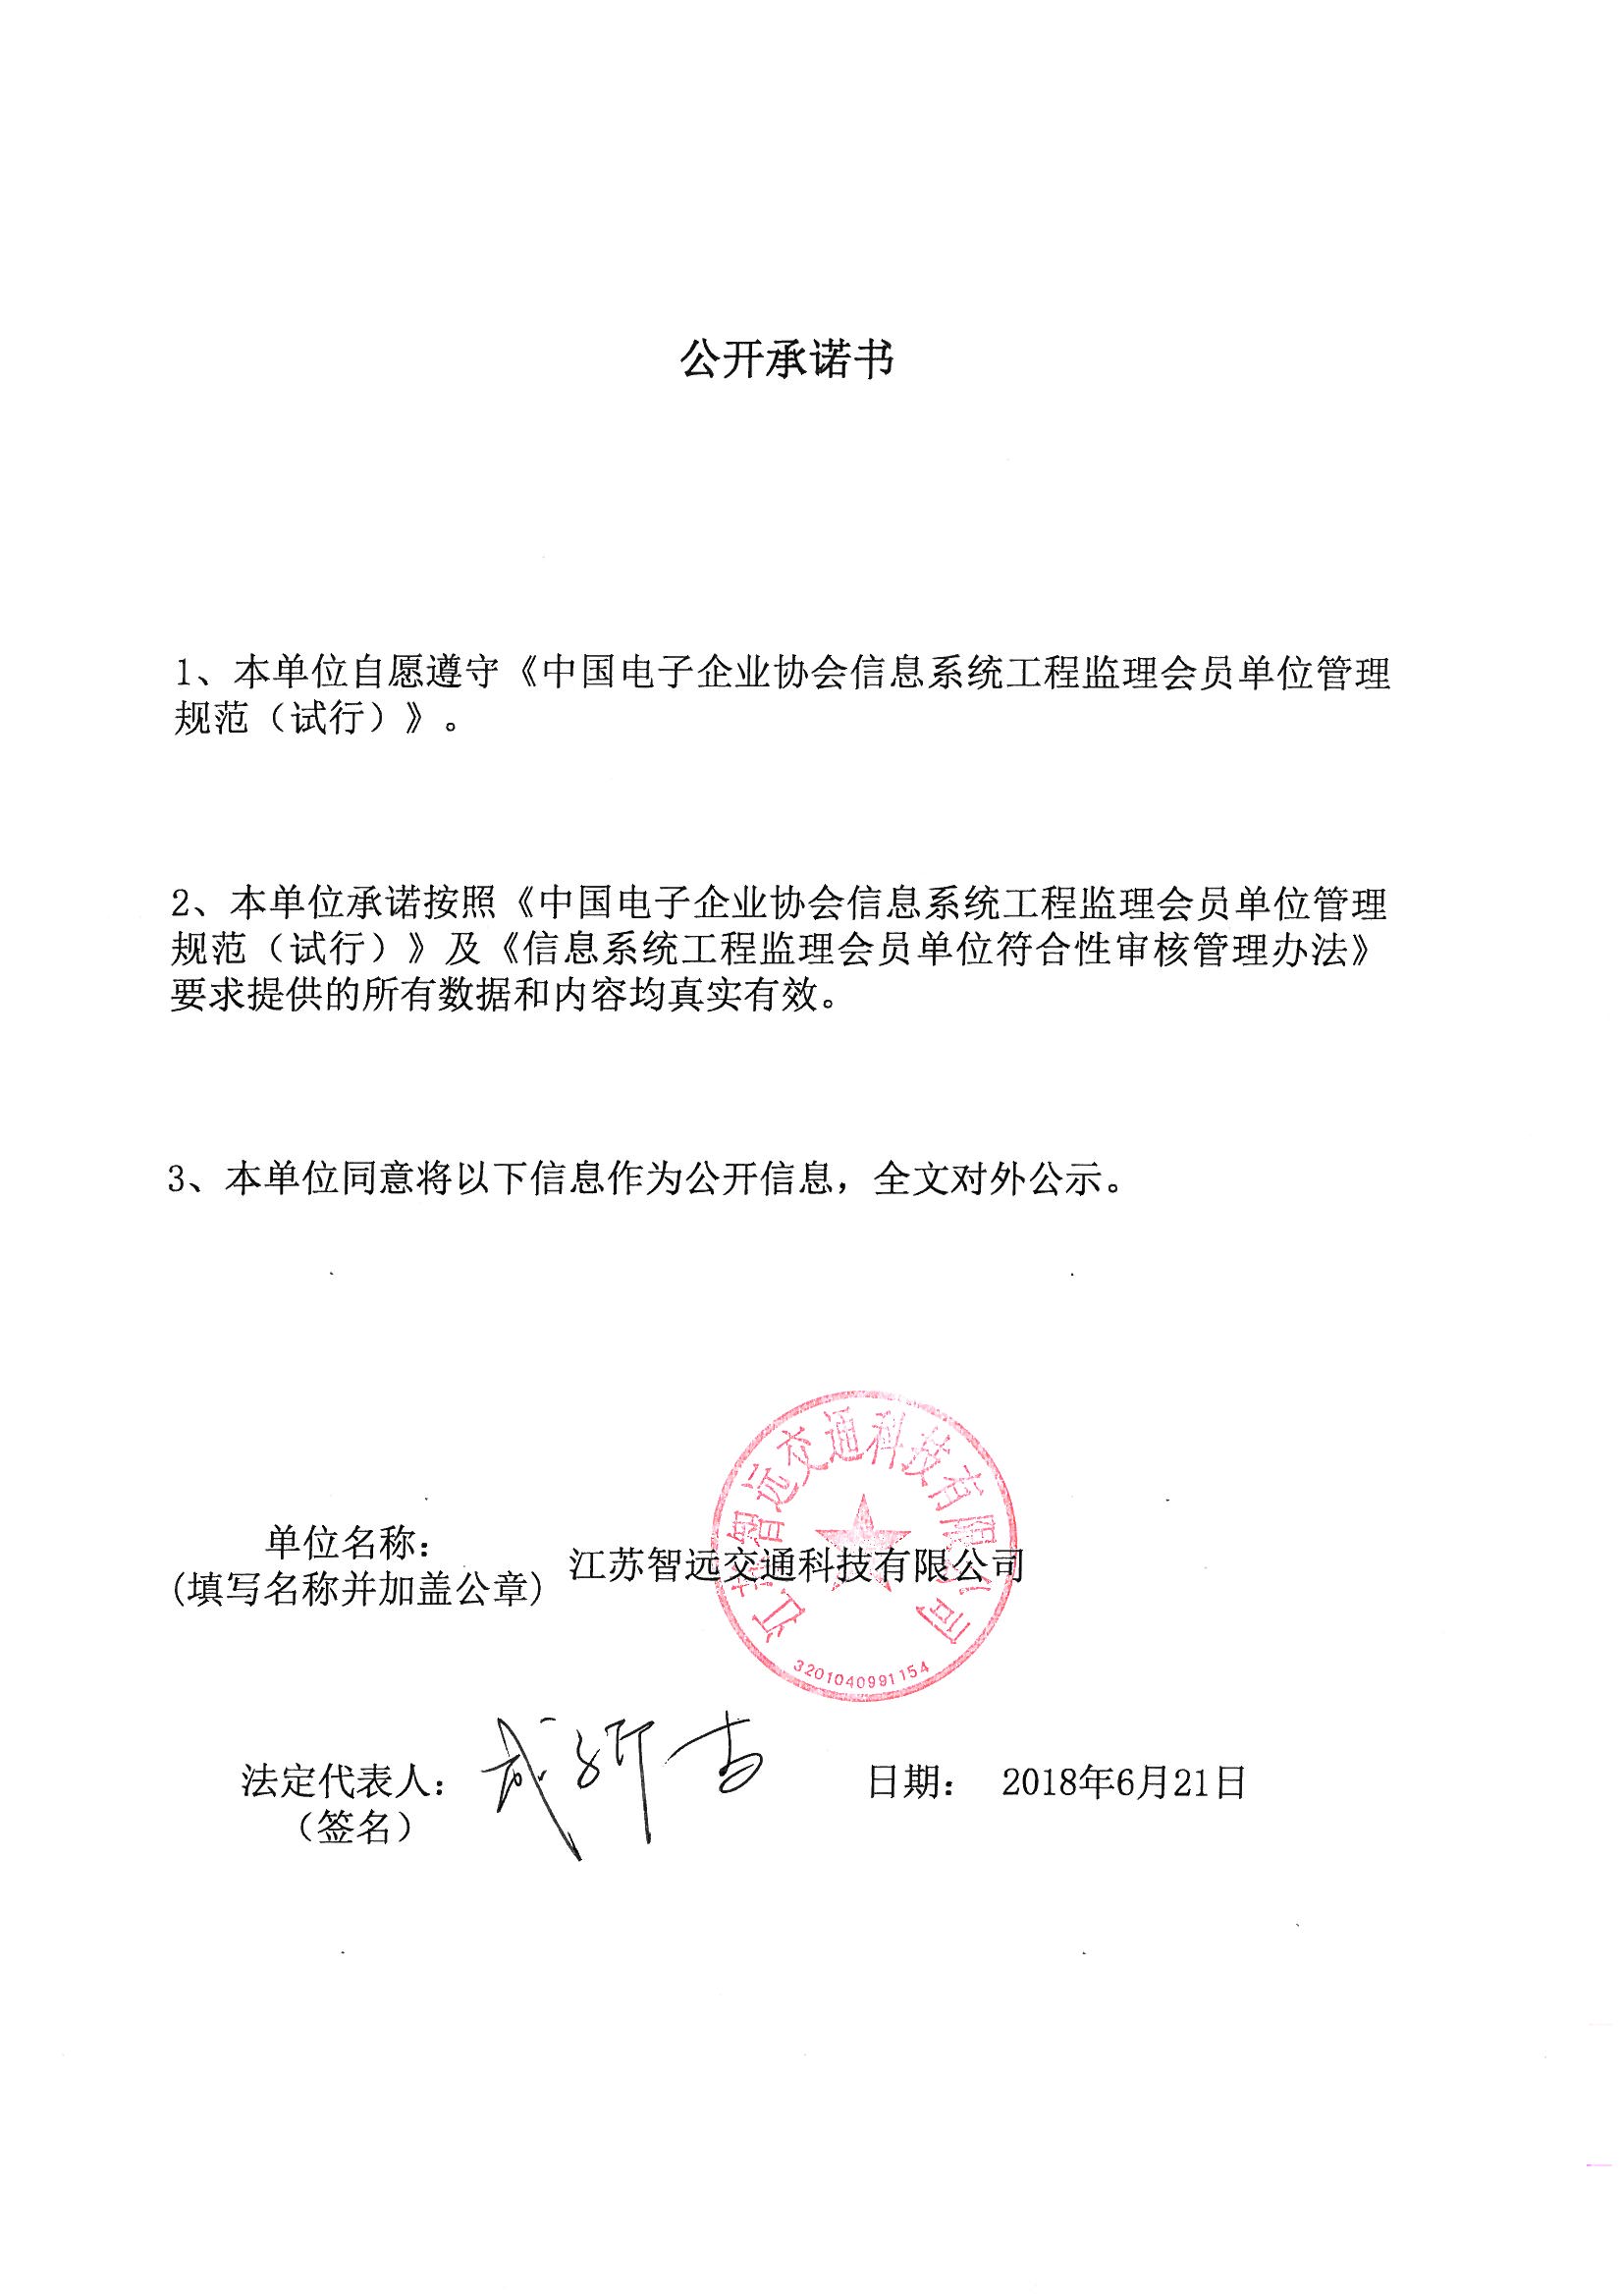 江苏智远交通科技有限公司信息系统工程监理资质证书